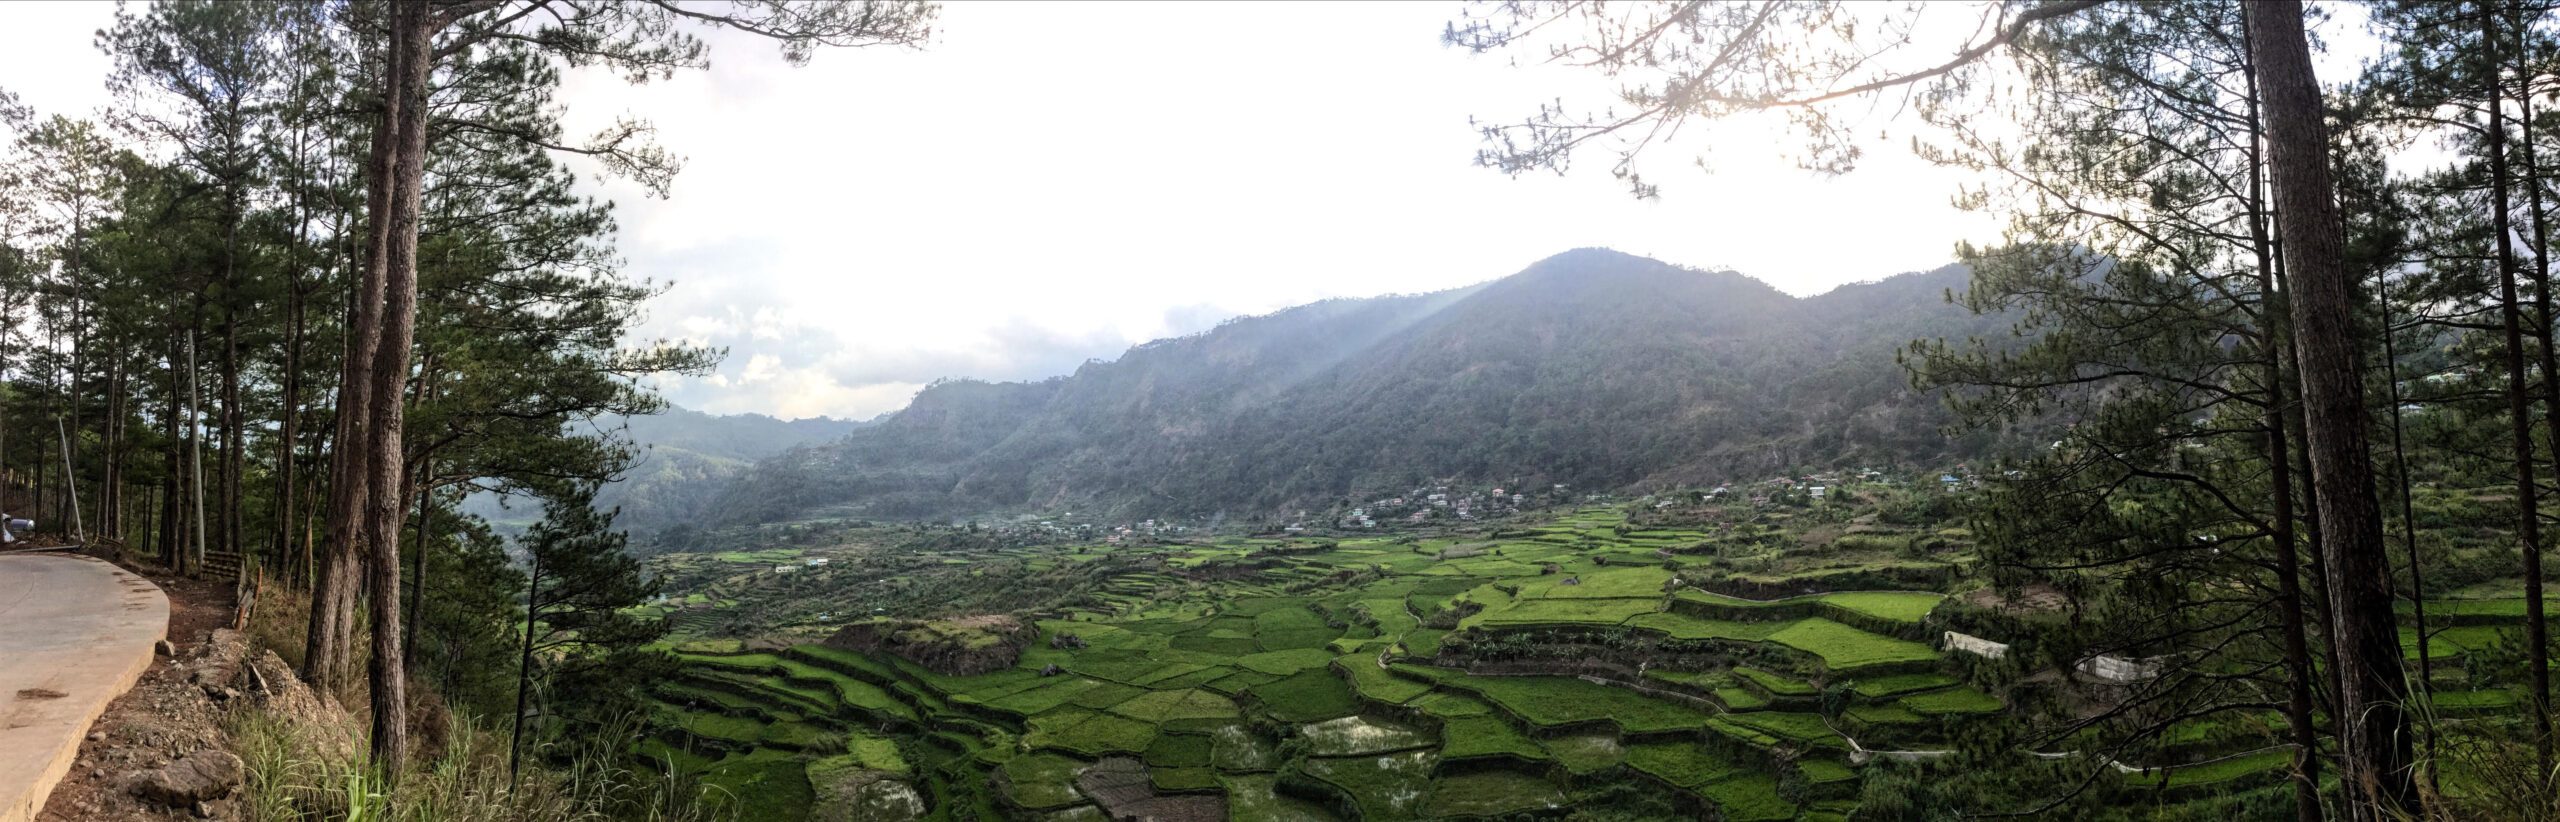 Seeking Baguio alternative, tourists find Sagada sunrise